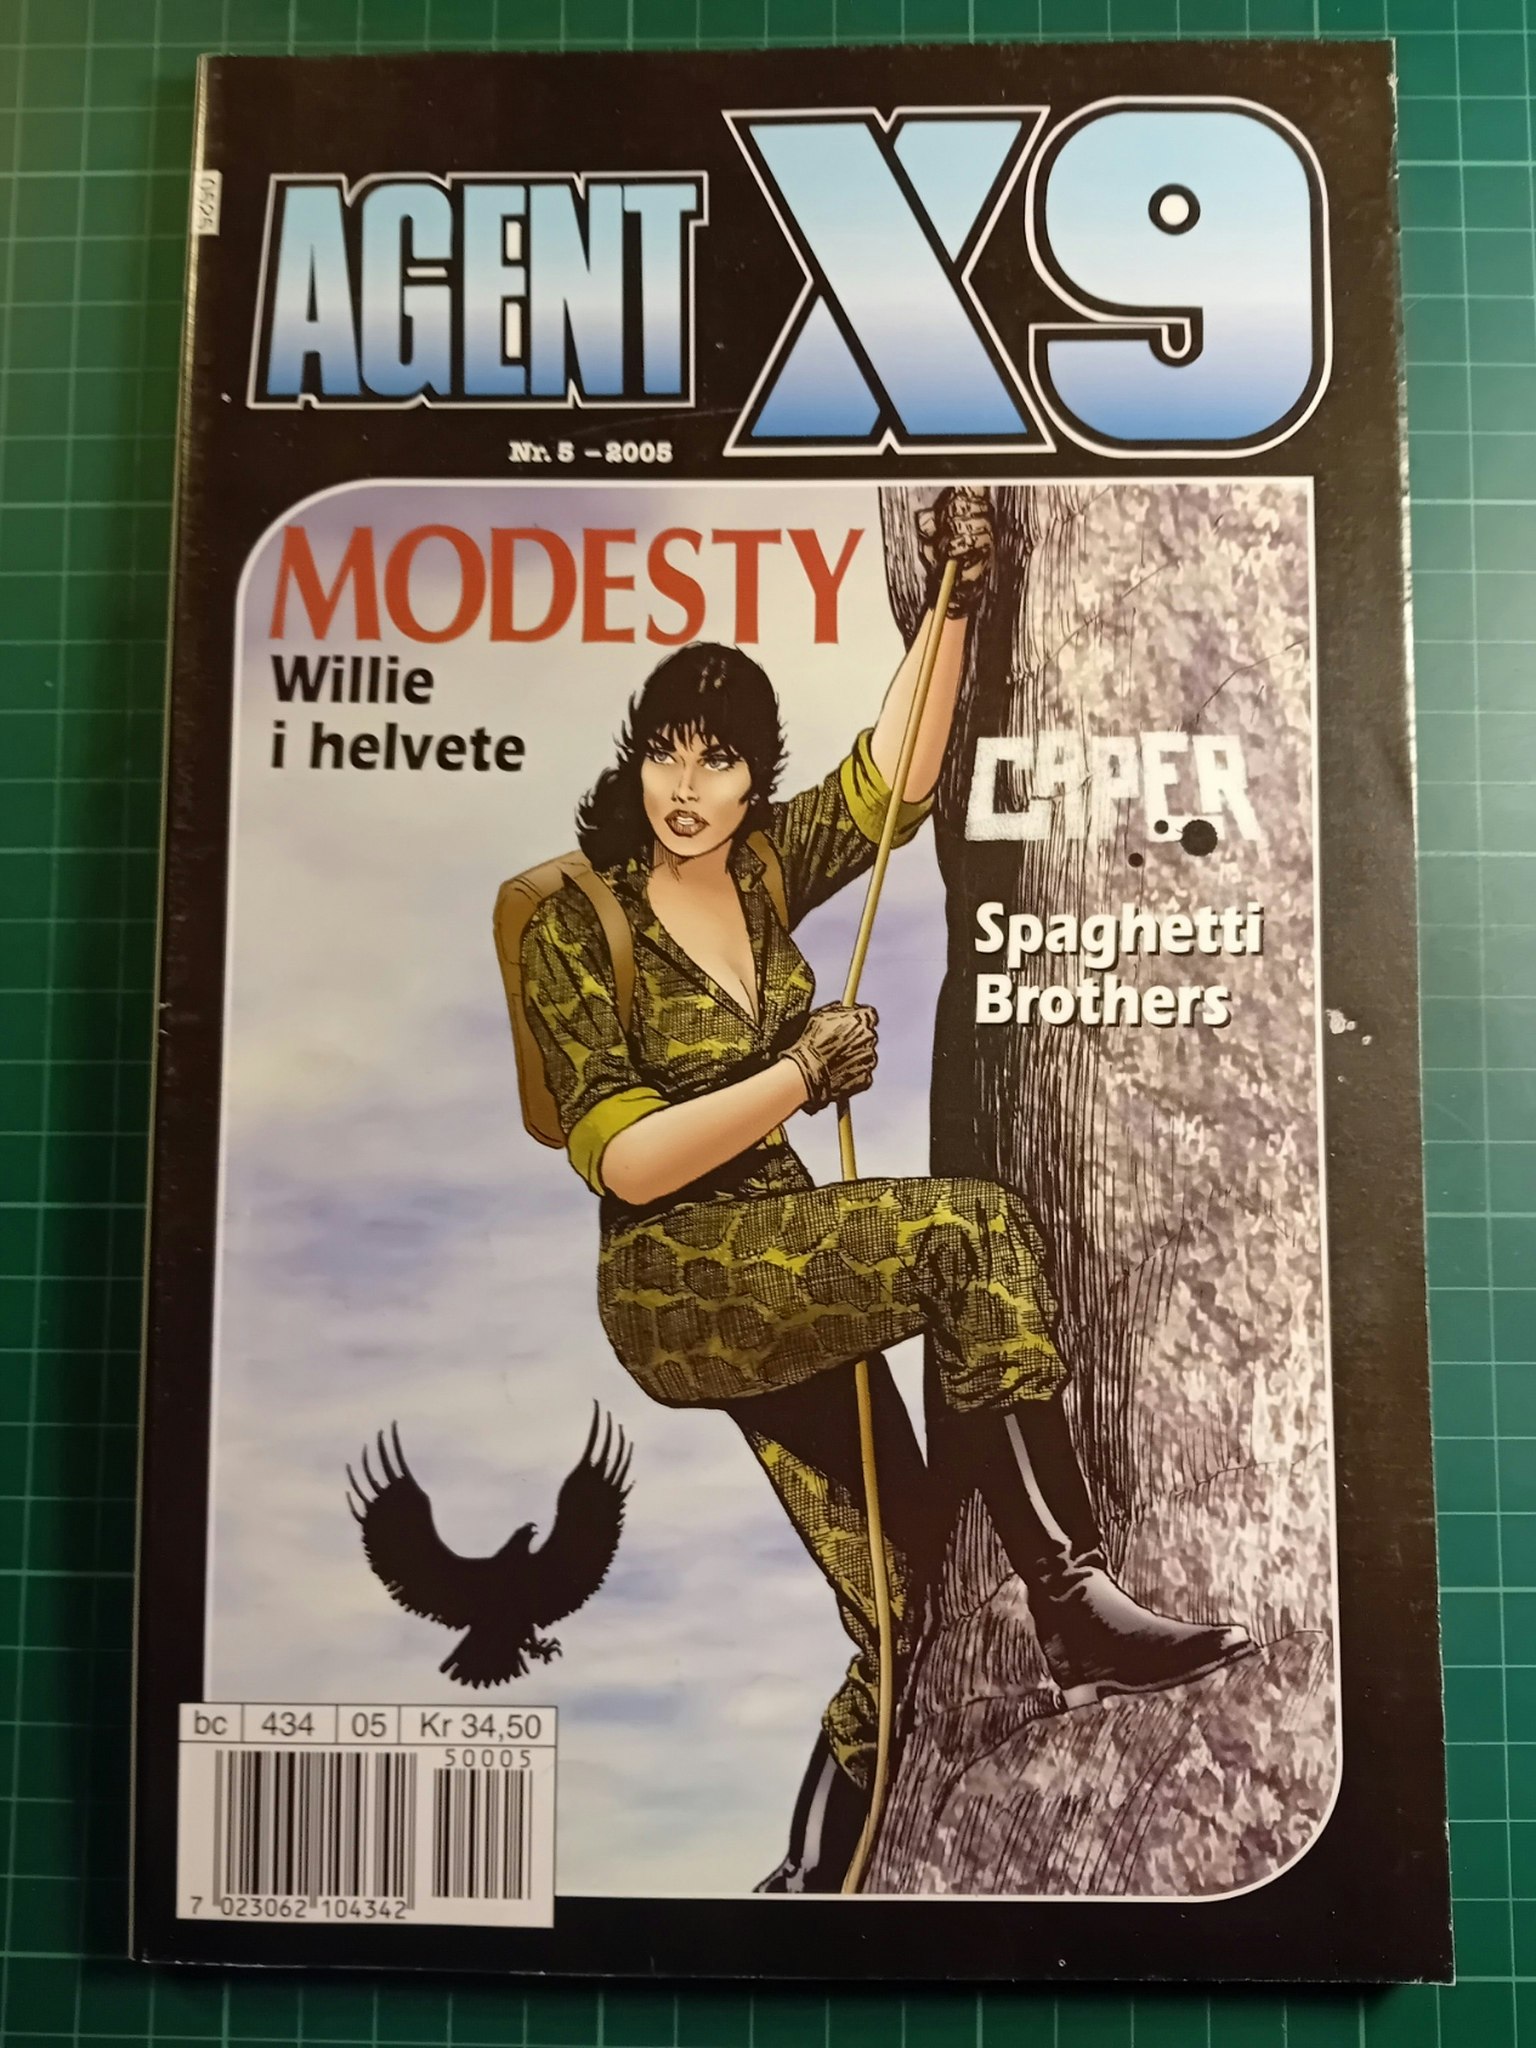 Agent X9 2005 - 05